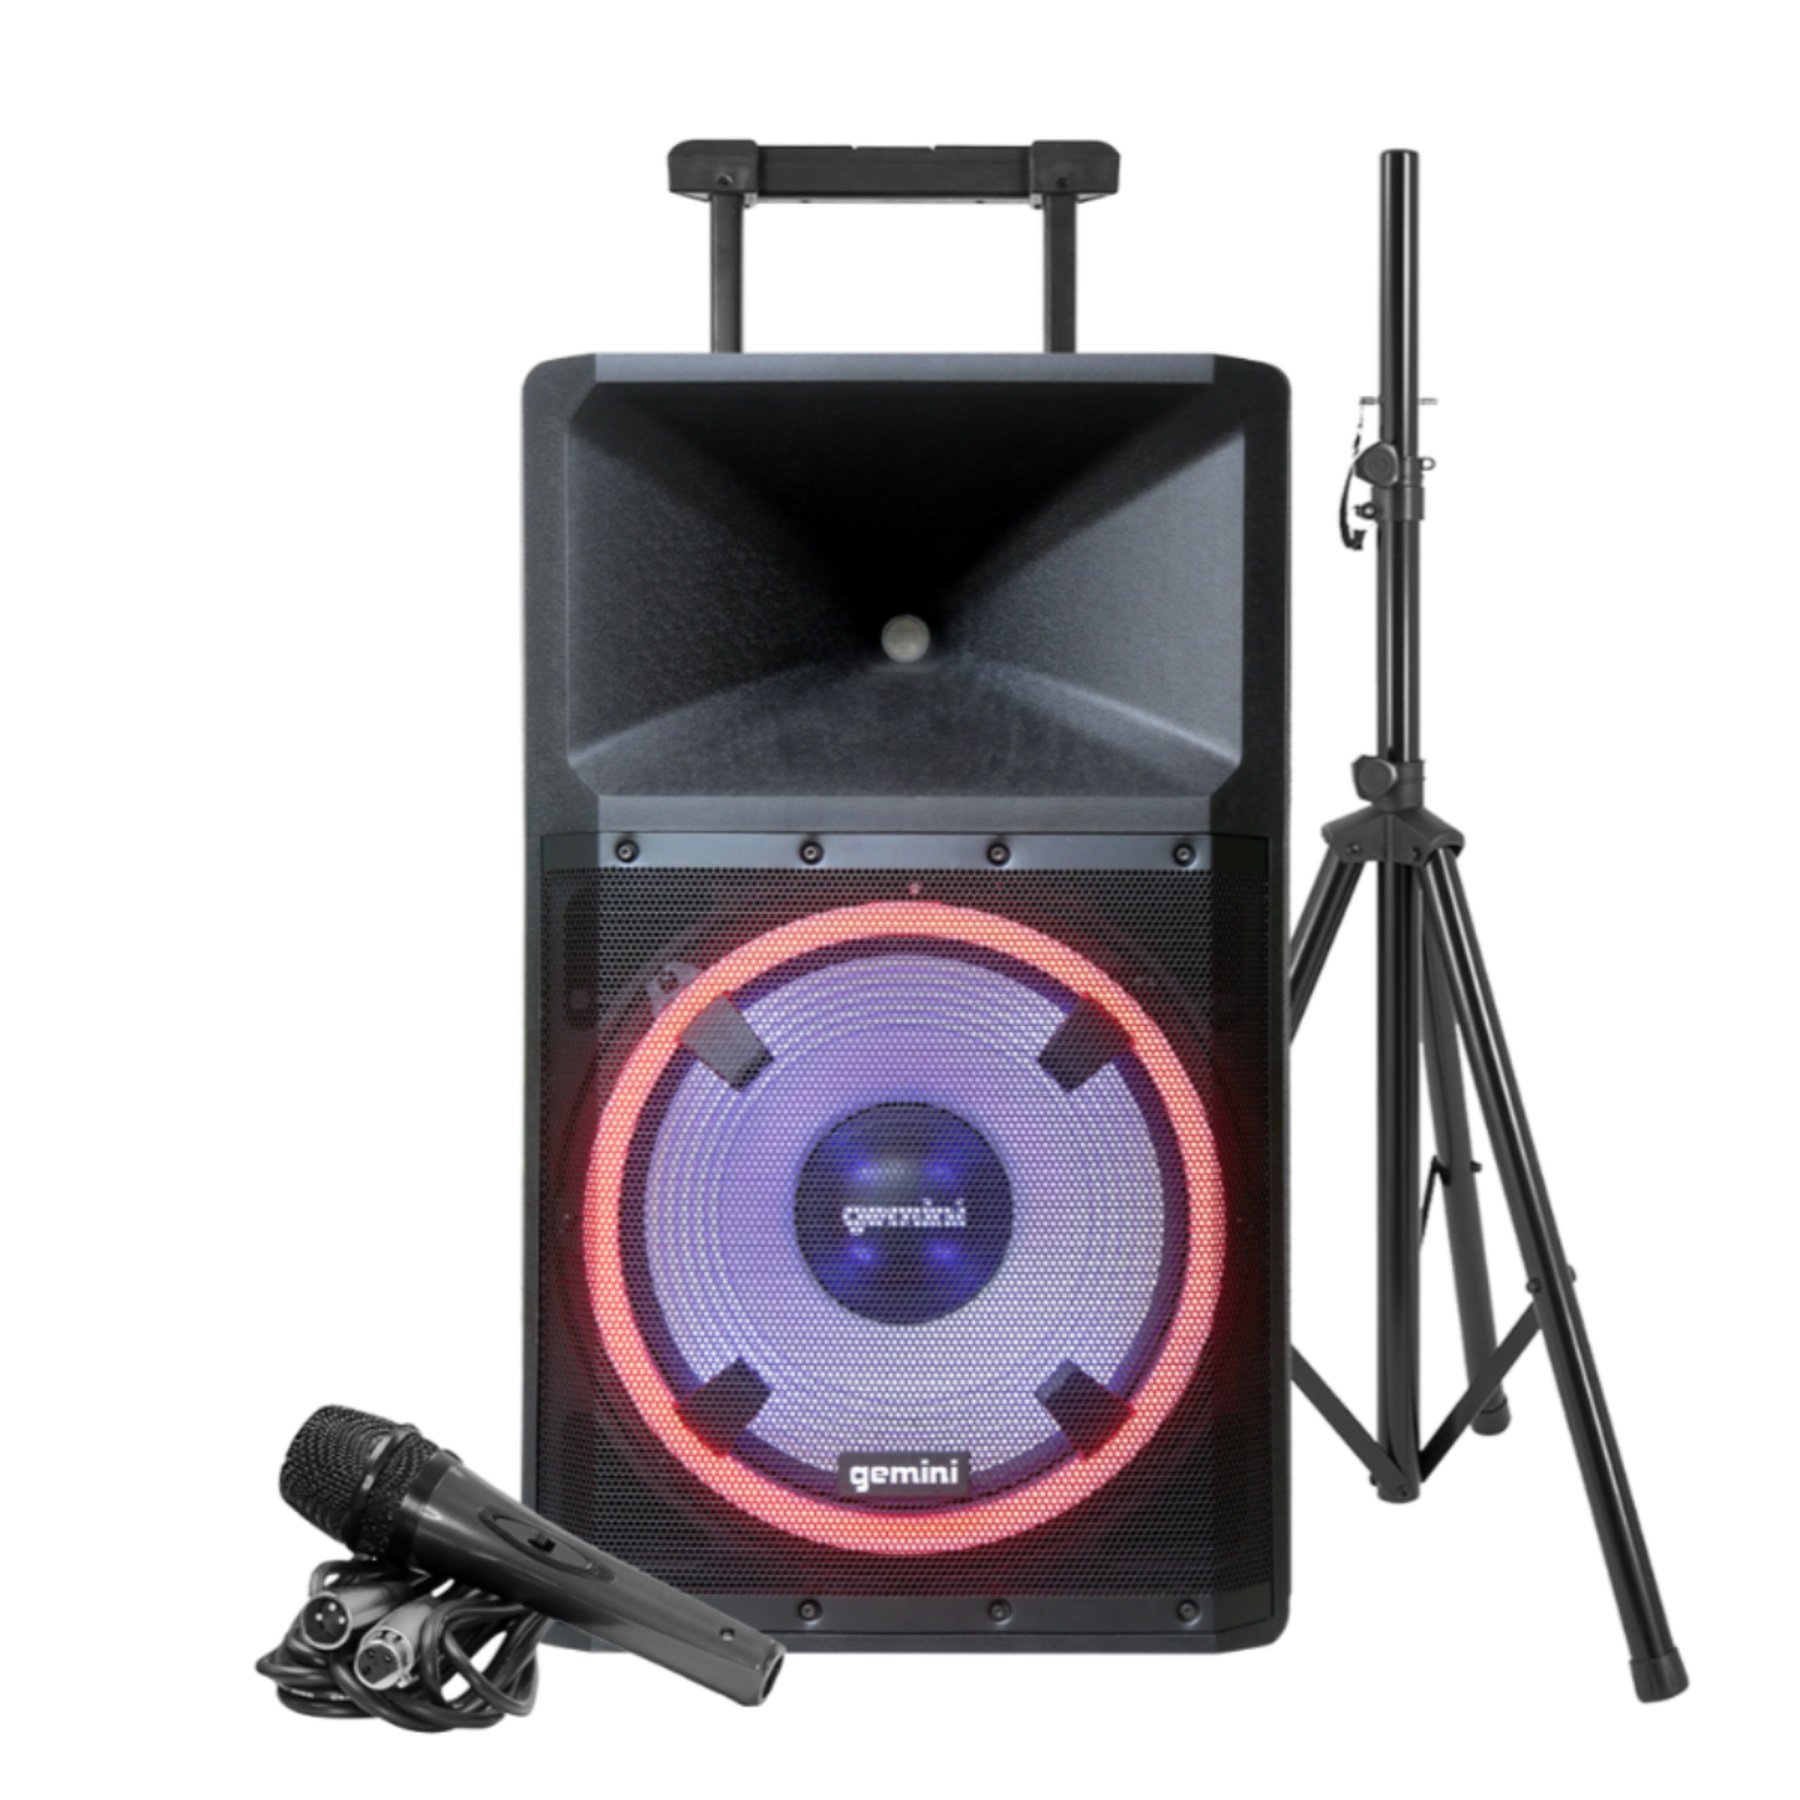 Photos - Speakers Gemini GSP-L2200PK 15” 2200W Loudspeaker with LED Lightshow, Speaker 